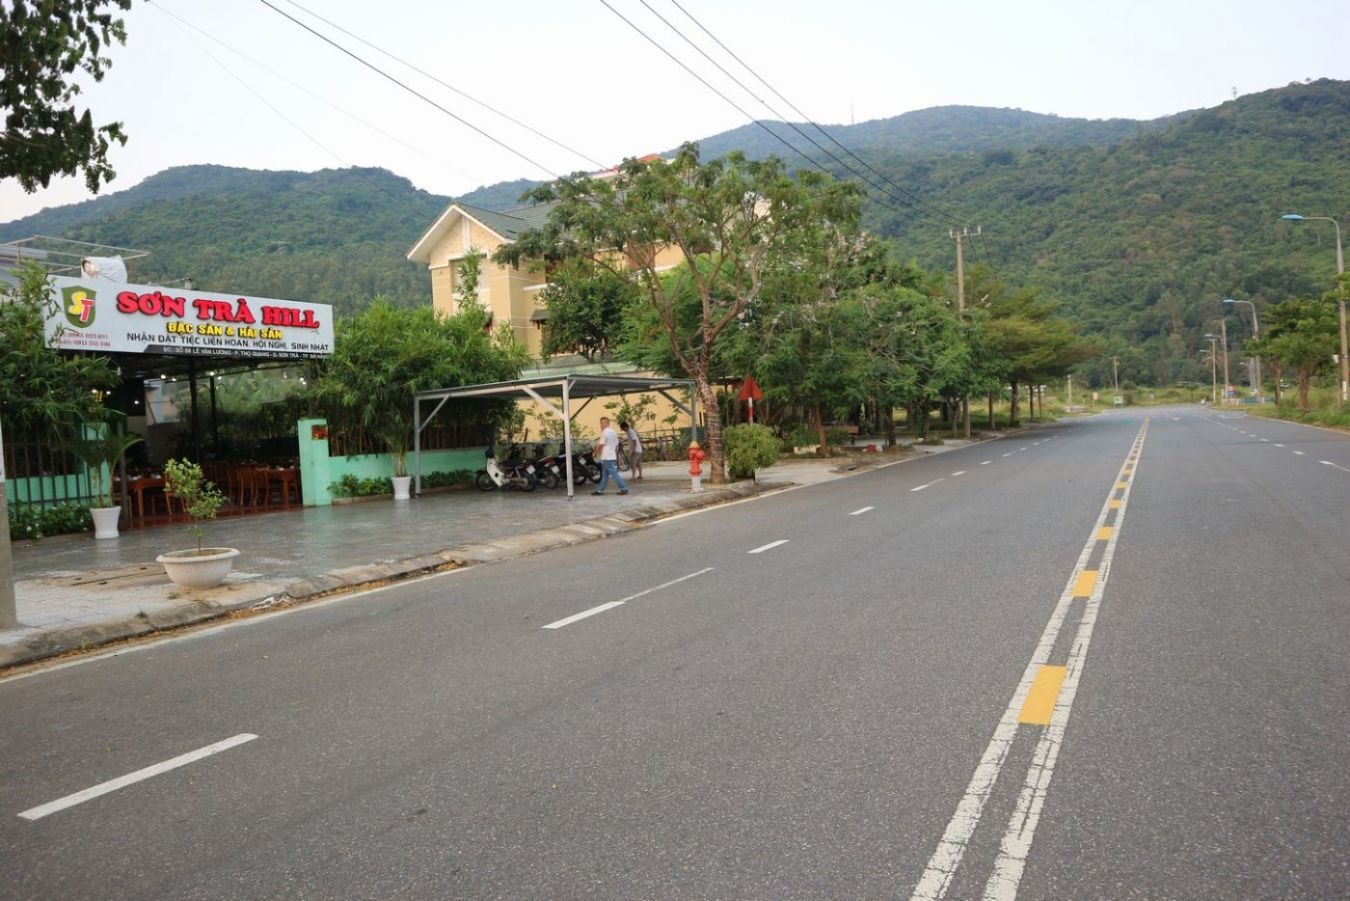 Sơn trà hill, nhà hàng son tra hill số 8 đường Lê Văn Lương, Sơn Trà, ngay chân núi Sơn Trà Đà Nẵng